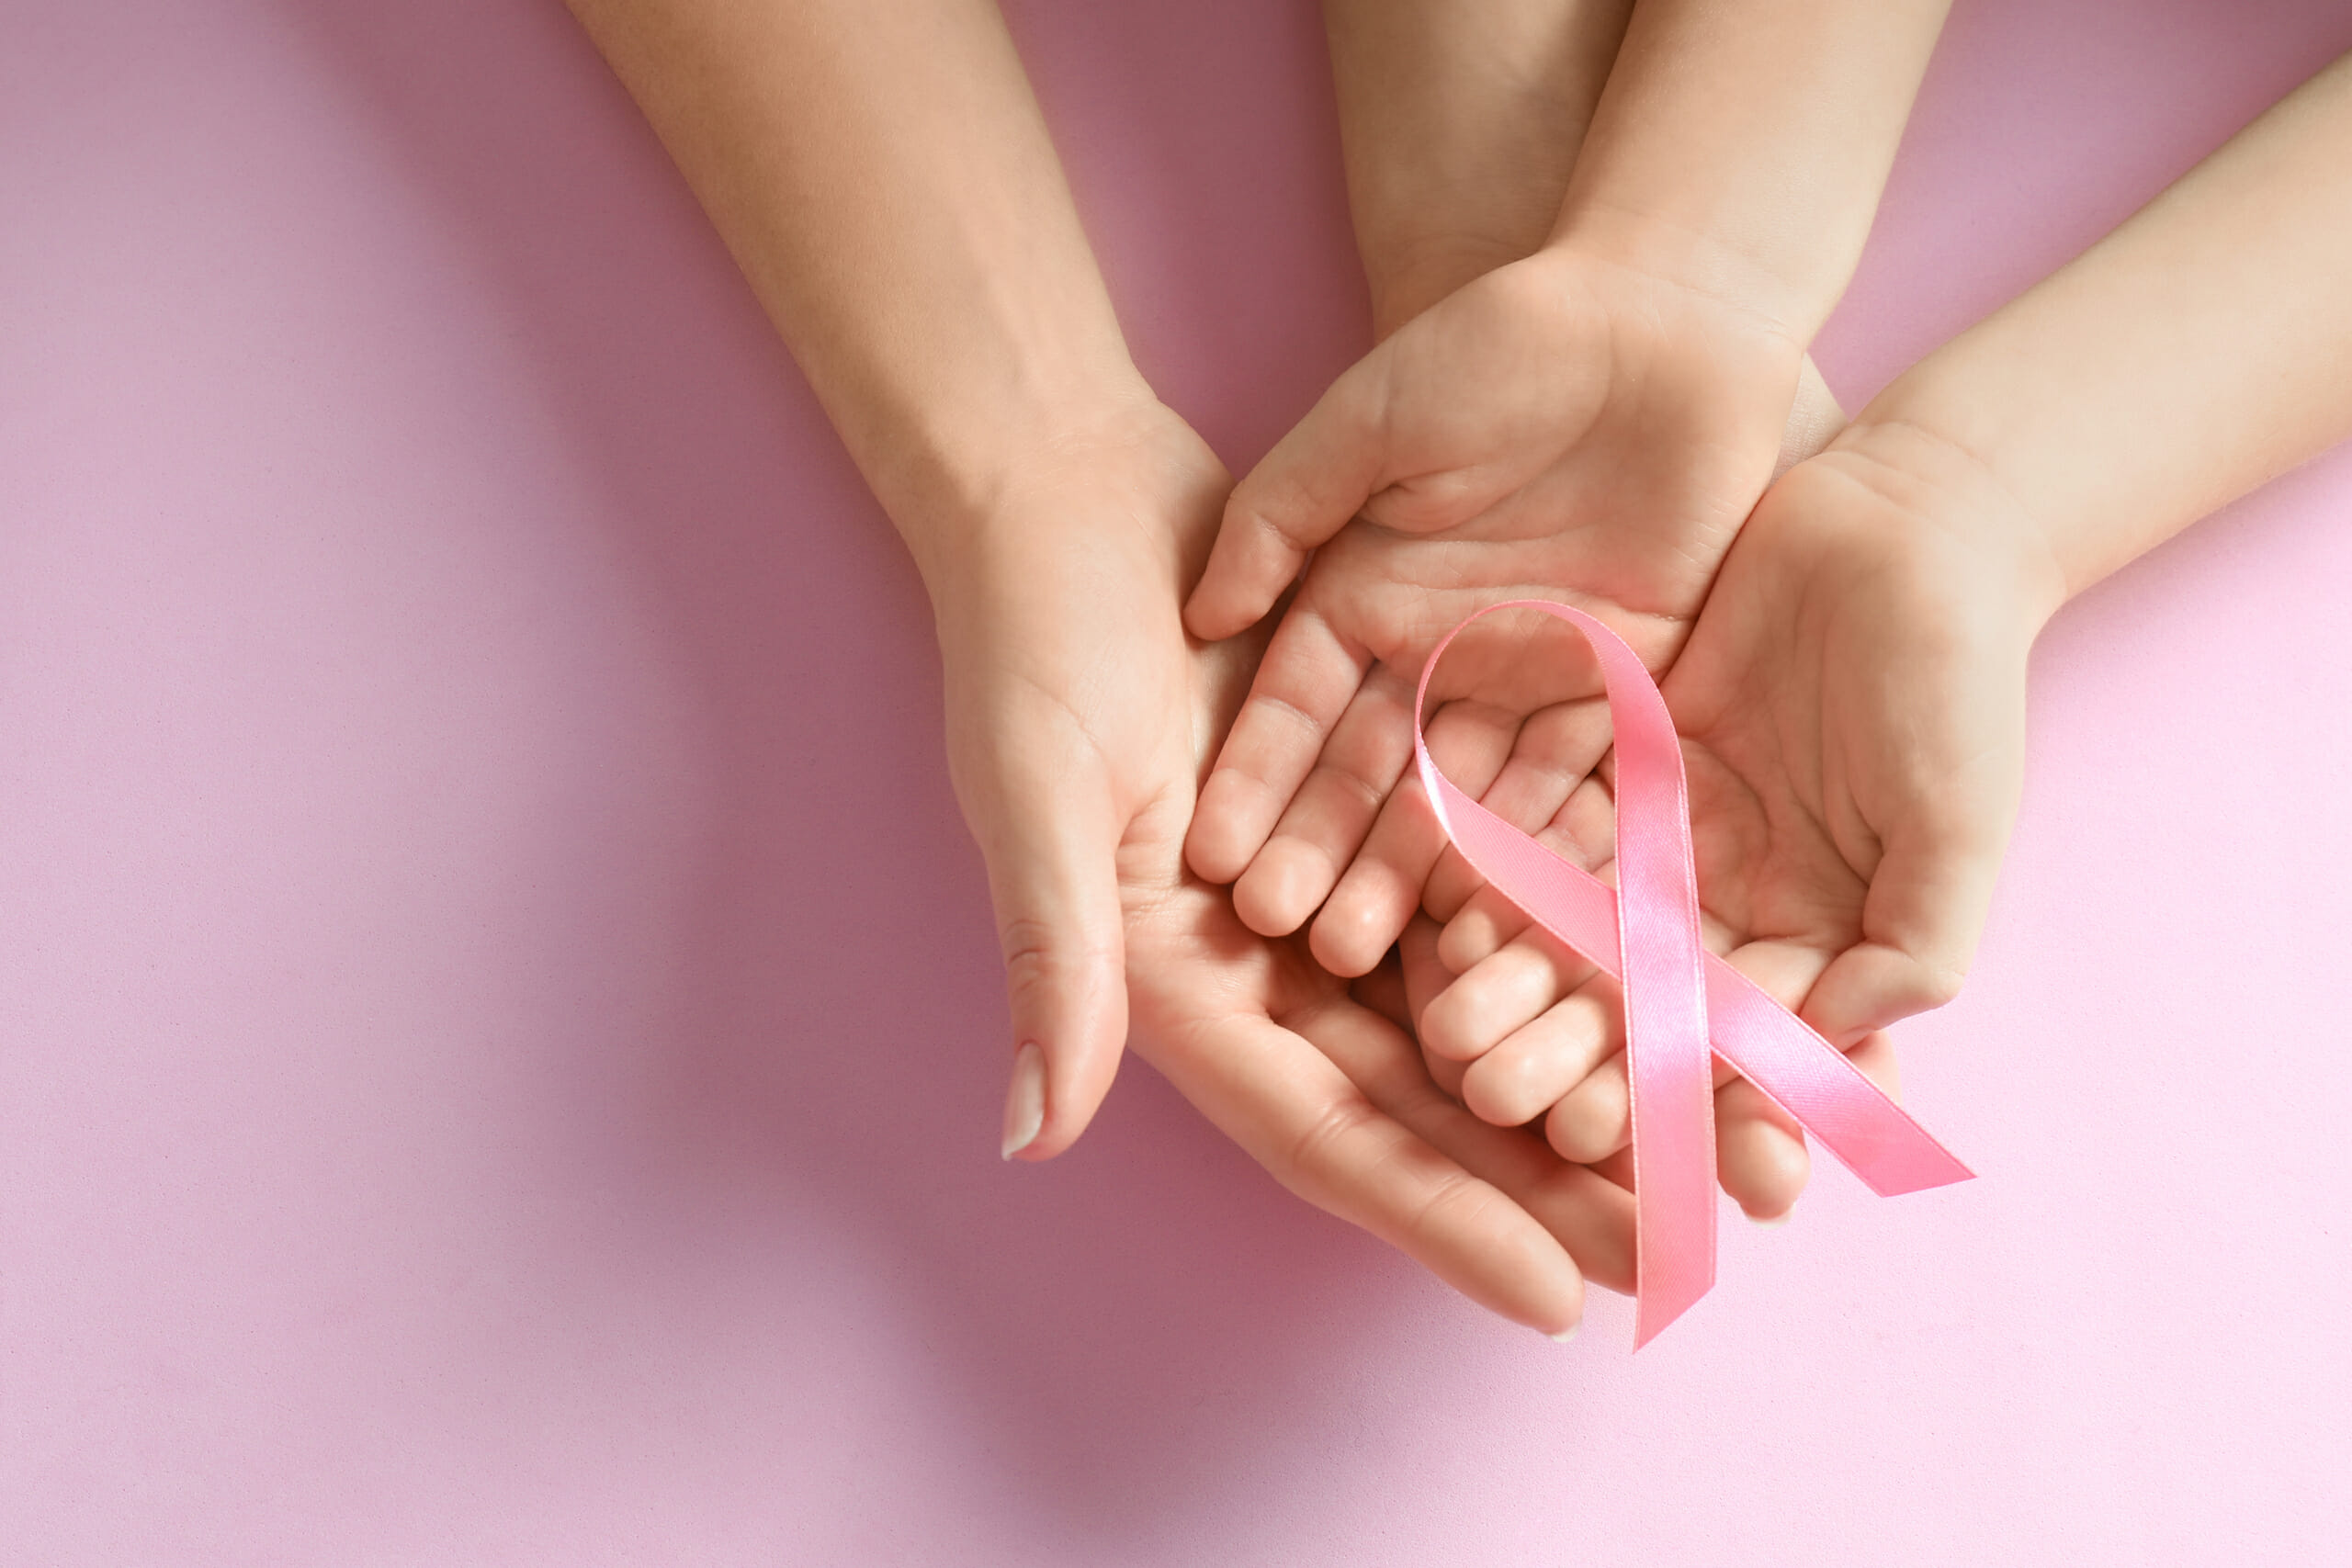 Brustkrebs & EMF – Gibt es einen Zusammenhang?